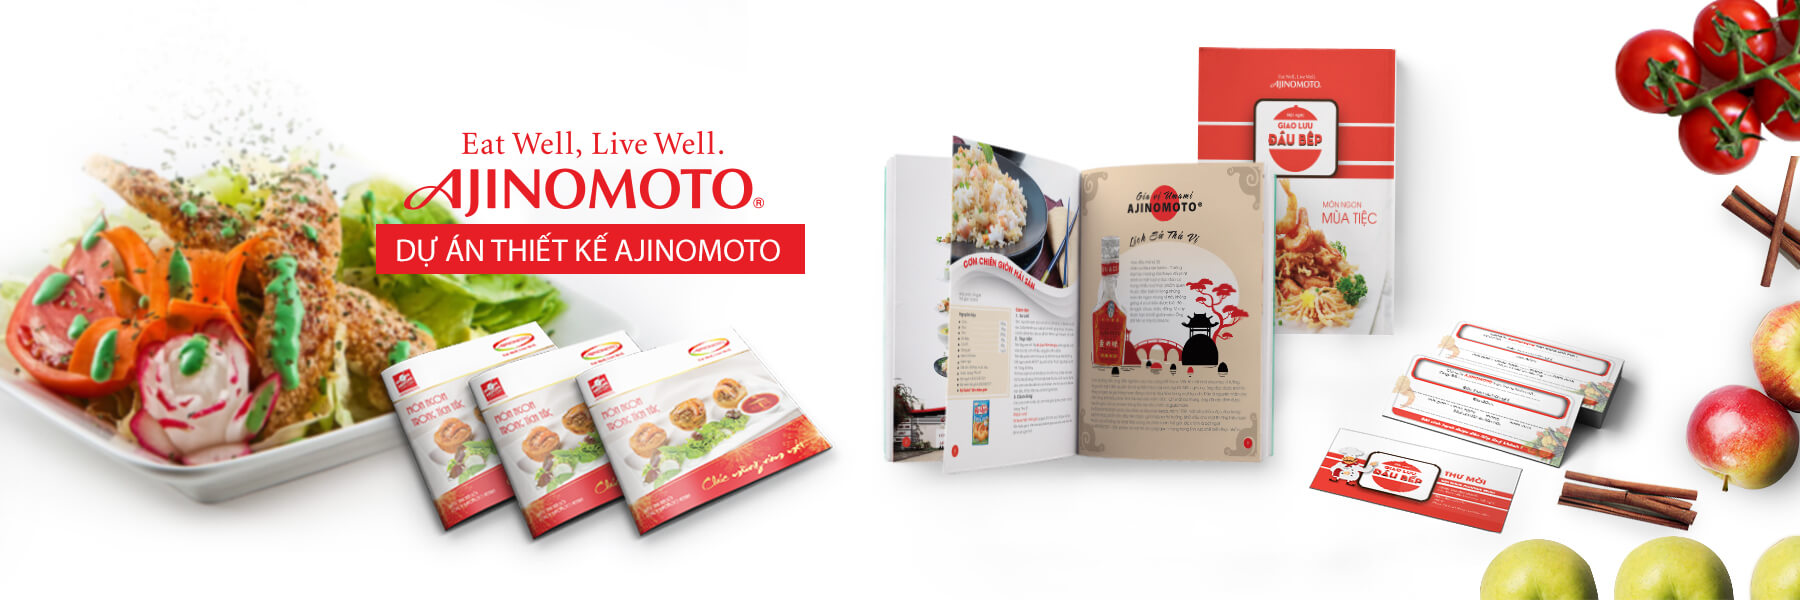 Thiết kế tài liệu marketing công ty Ajinomoto Việt Nam